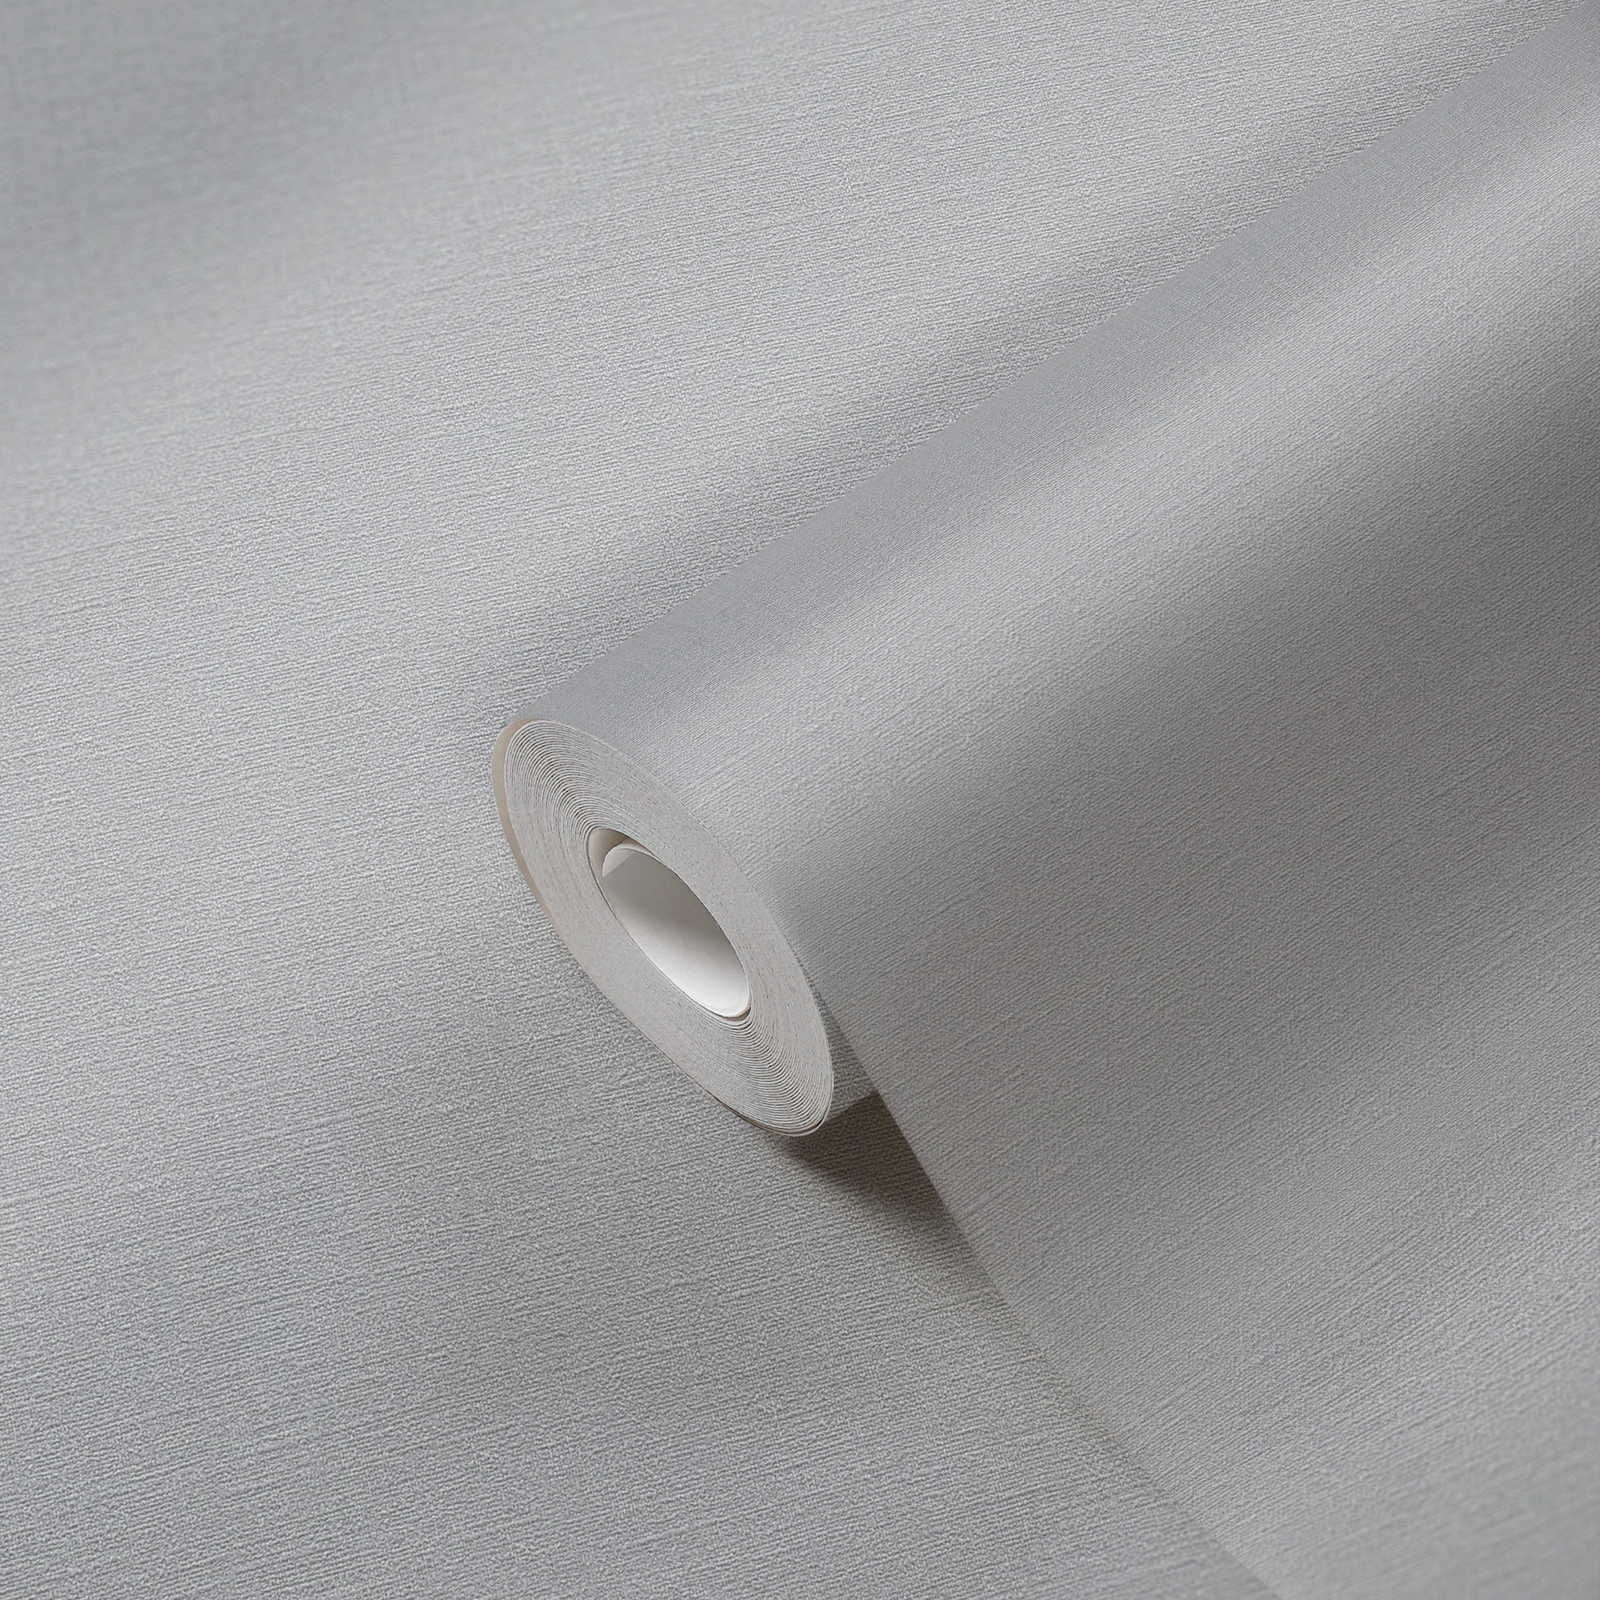             Papel pintado no tejido liso con estructura textil ligera sin PVC - beige
        